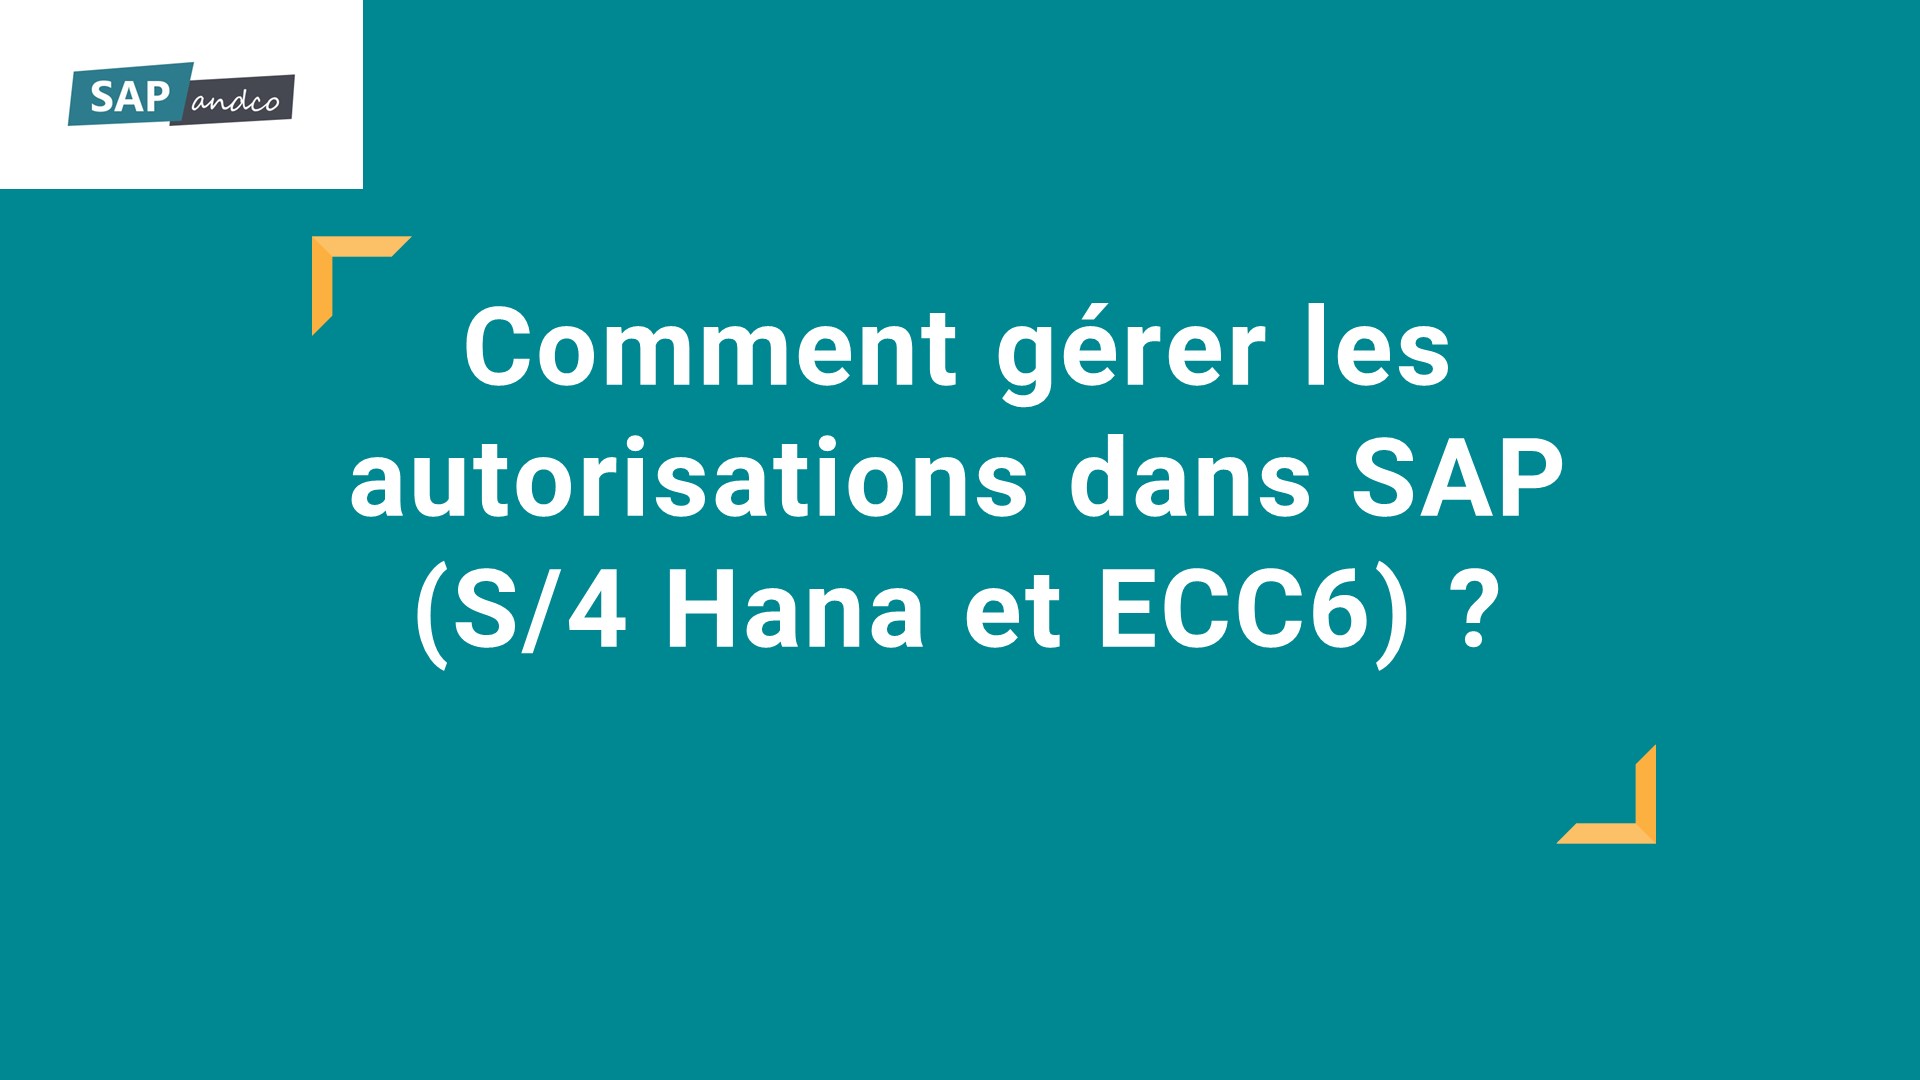 Comment gérer les autorisations dans SAP (S/4 Hana et ECC6) ?